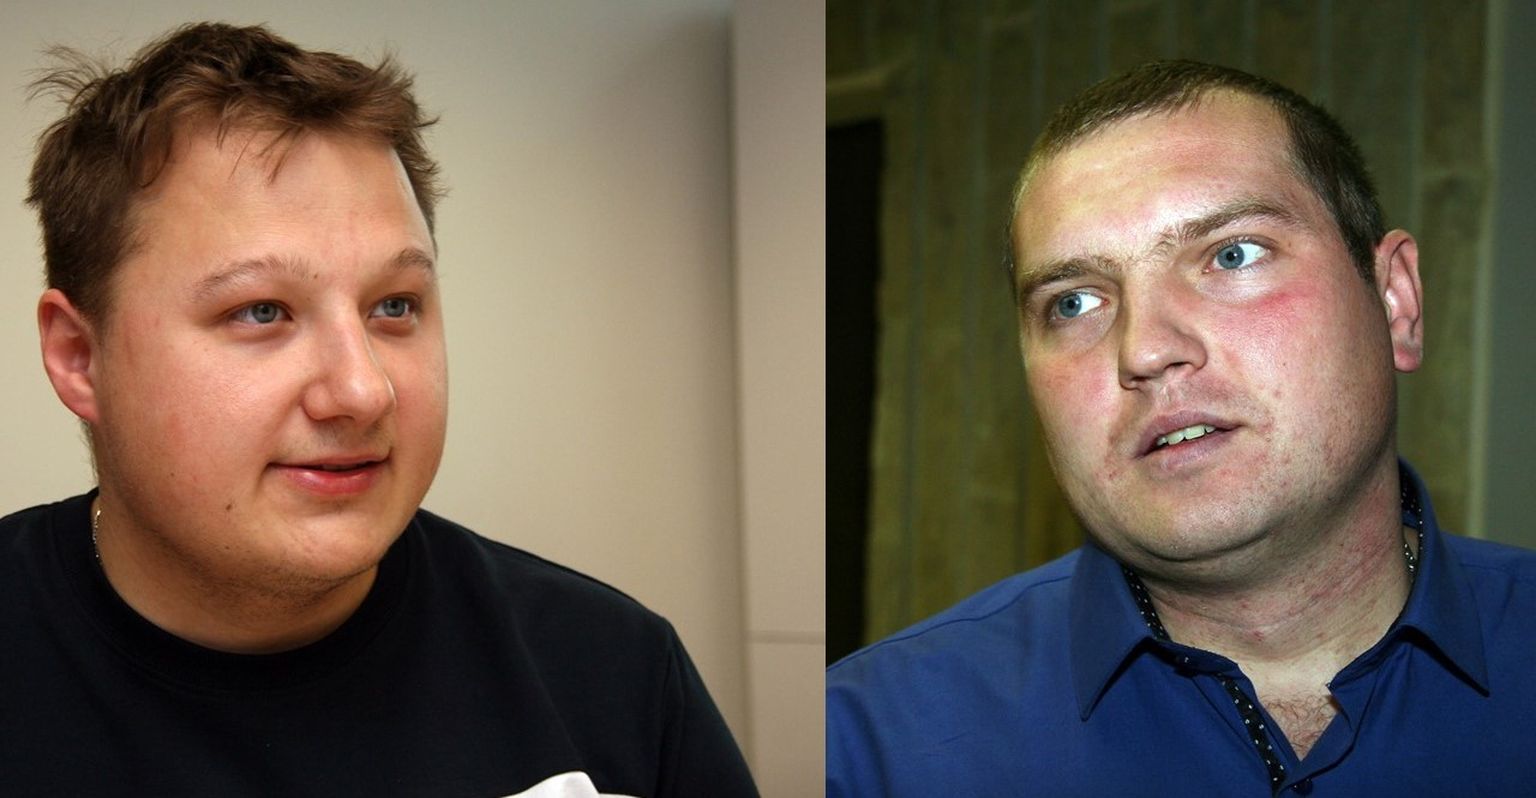 Антон Диев (слева) и Сергей Лопин были избраны в Кохтла-Ярвеское горсобрание по списку Центристской партии. Теперь же они оба хотят быть председателями разных фракций под именем Центристской партии.